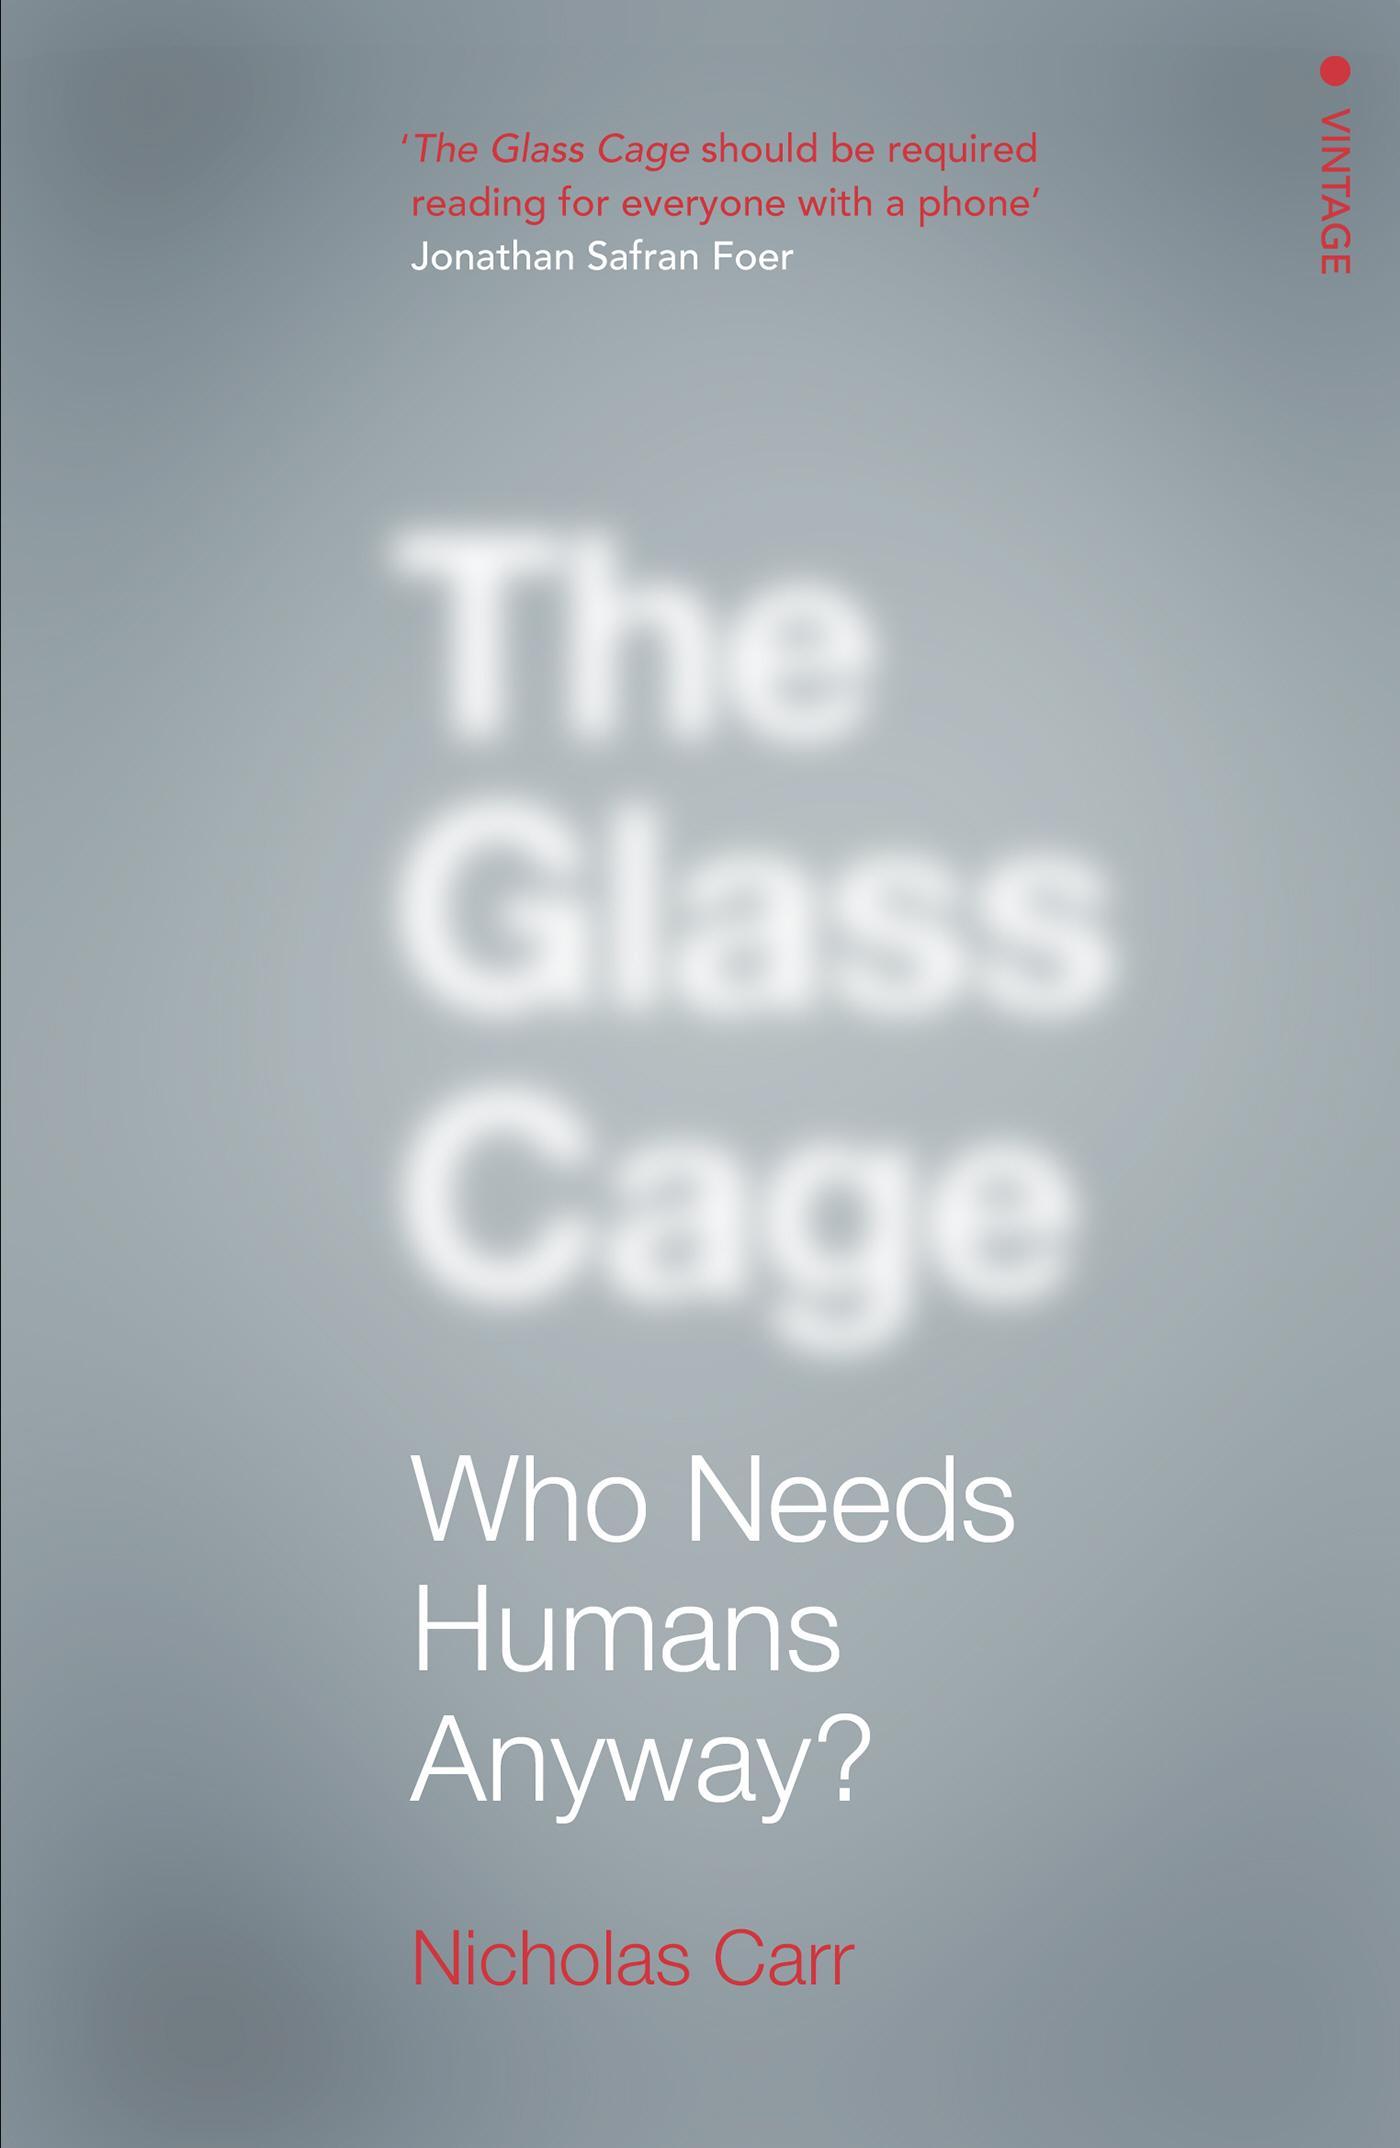 Glass Cage - Nicholas Carr